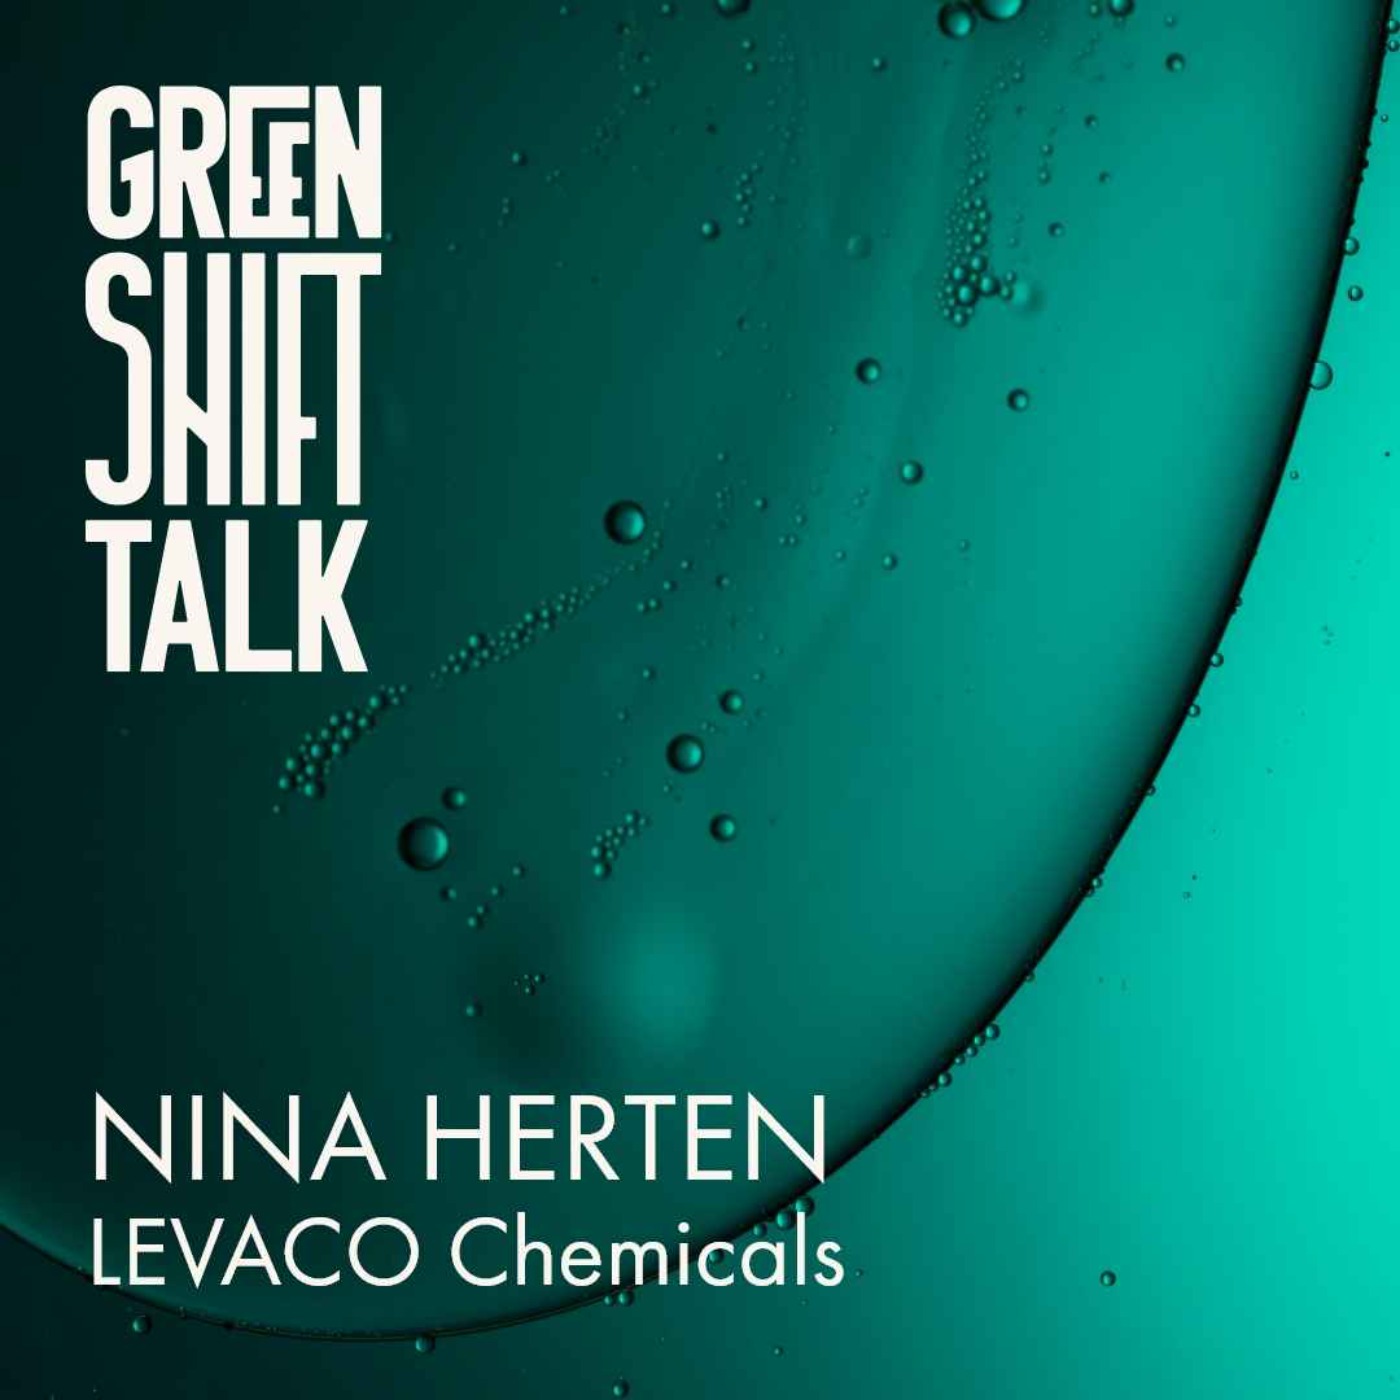 Wie grün kann Chemie sein, Nina Herten?